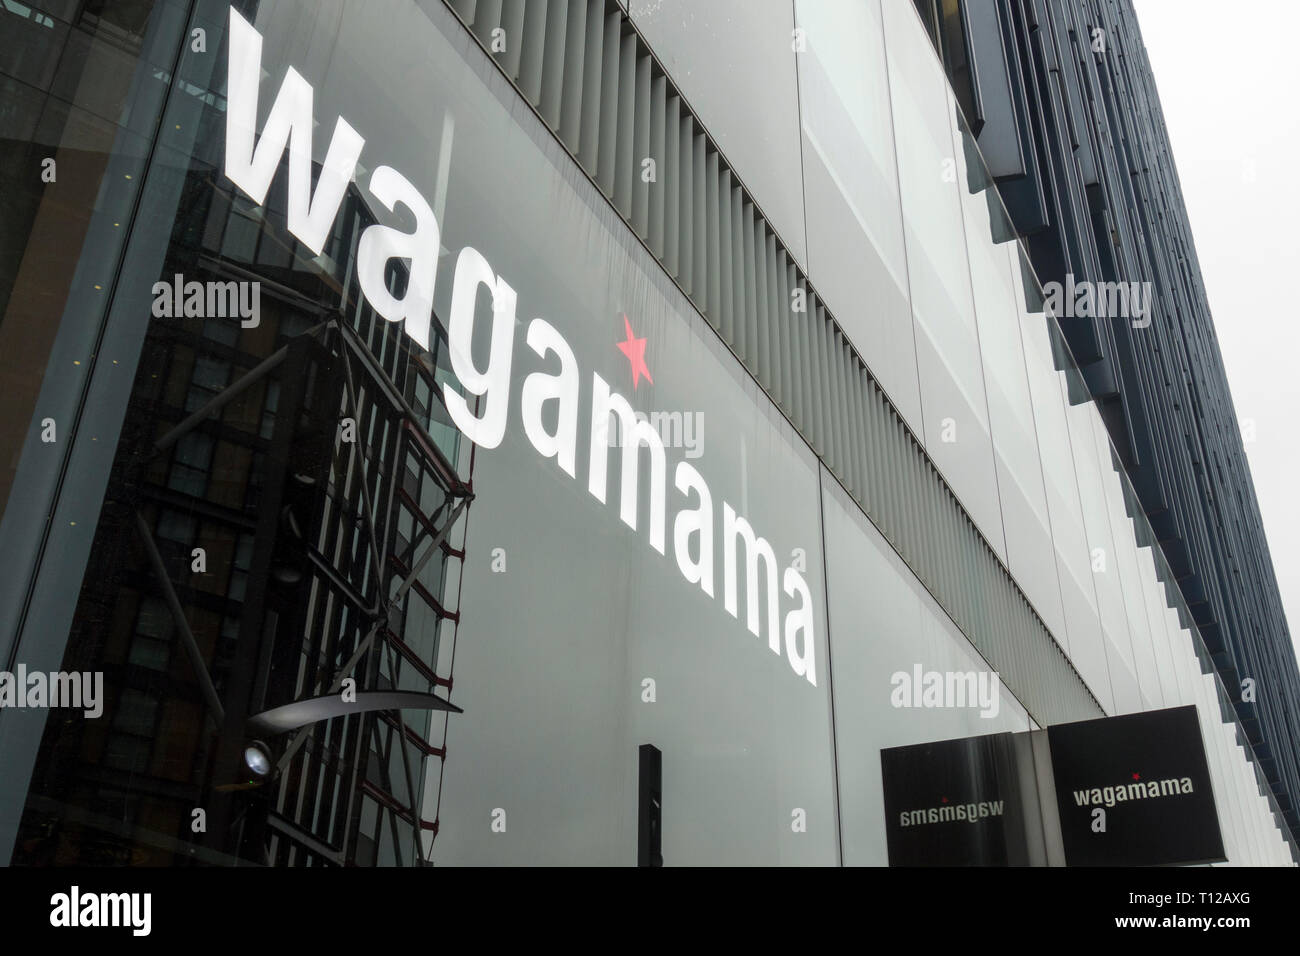 Wagamama Bankside, Sumner Street, London, SE1, UK Stock Photo